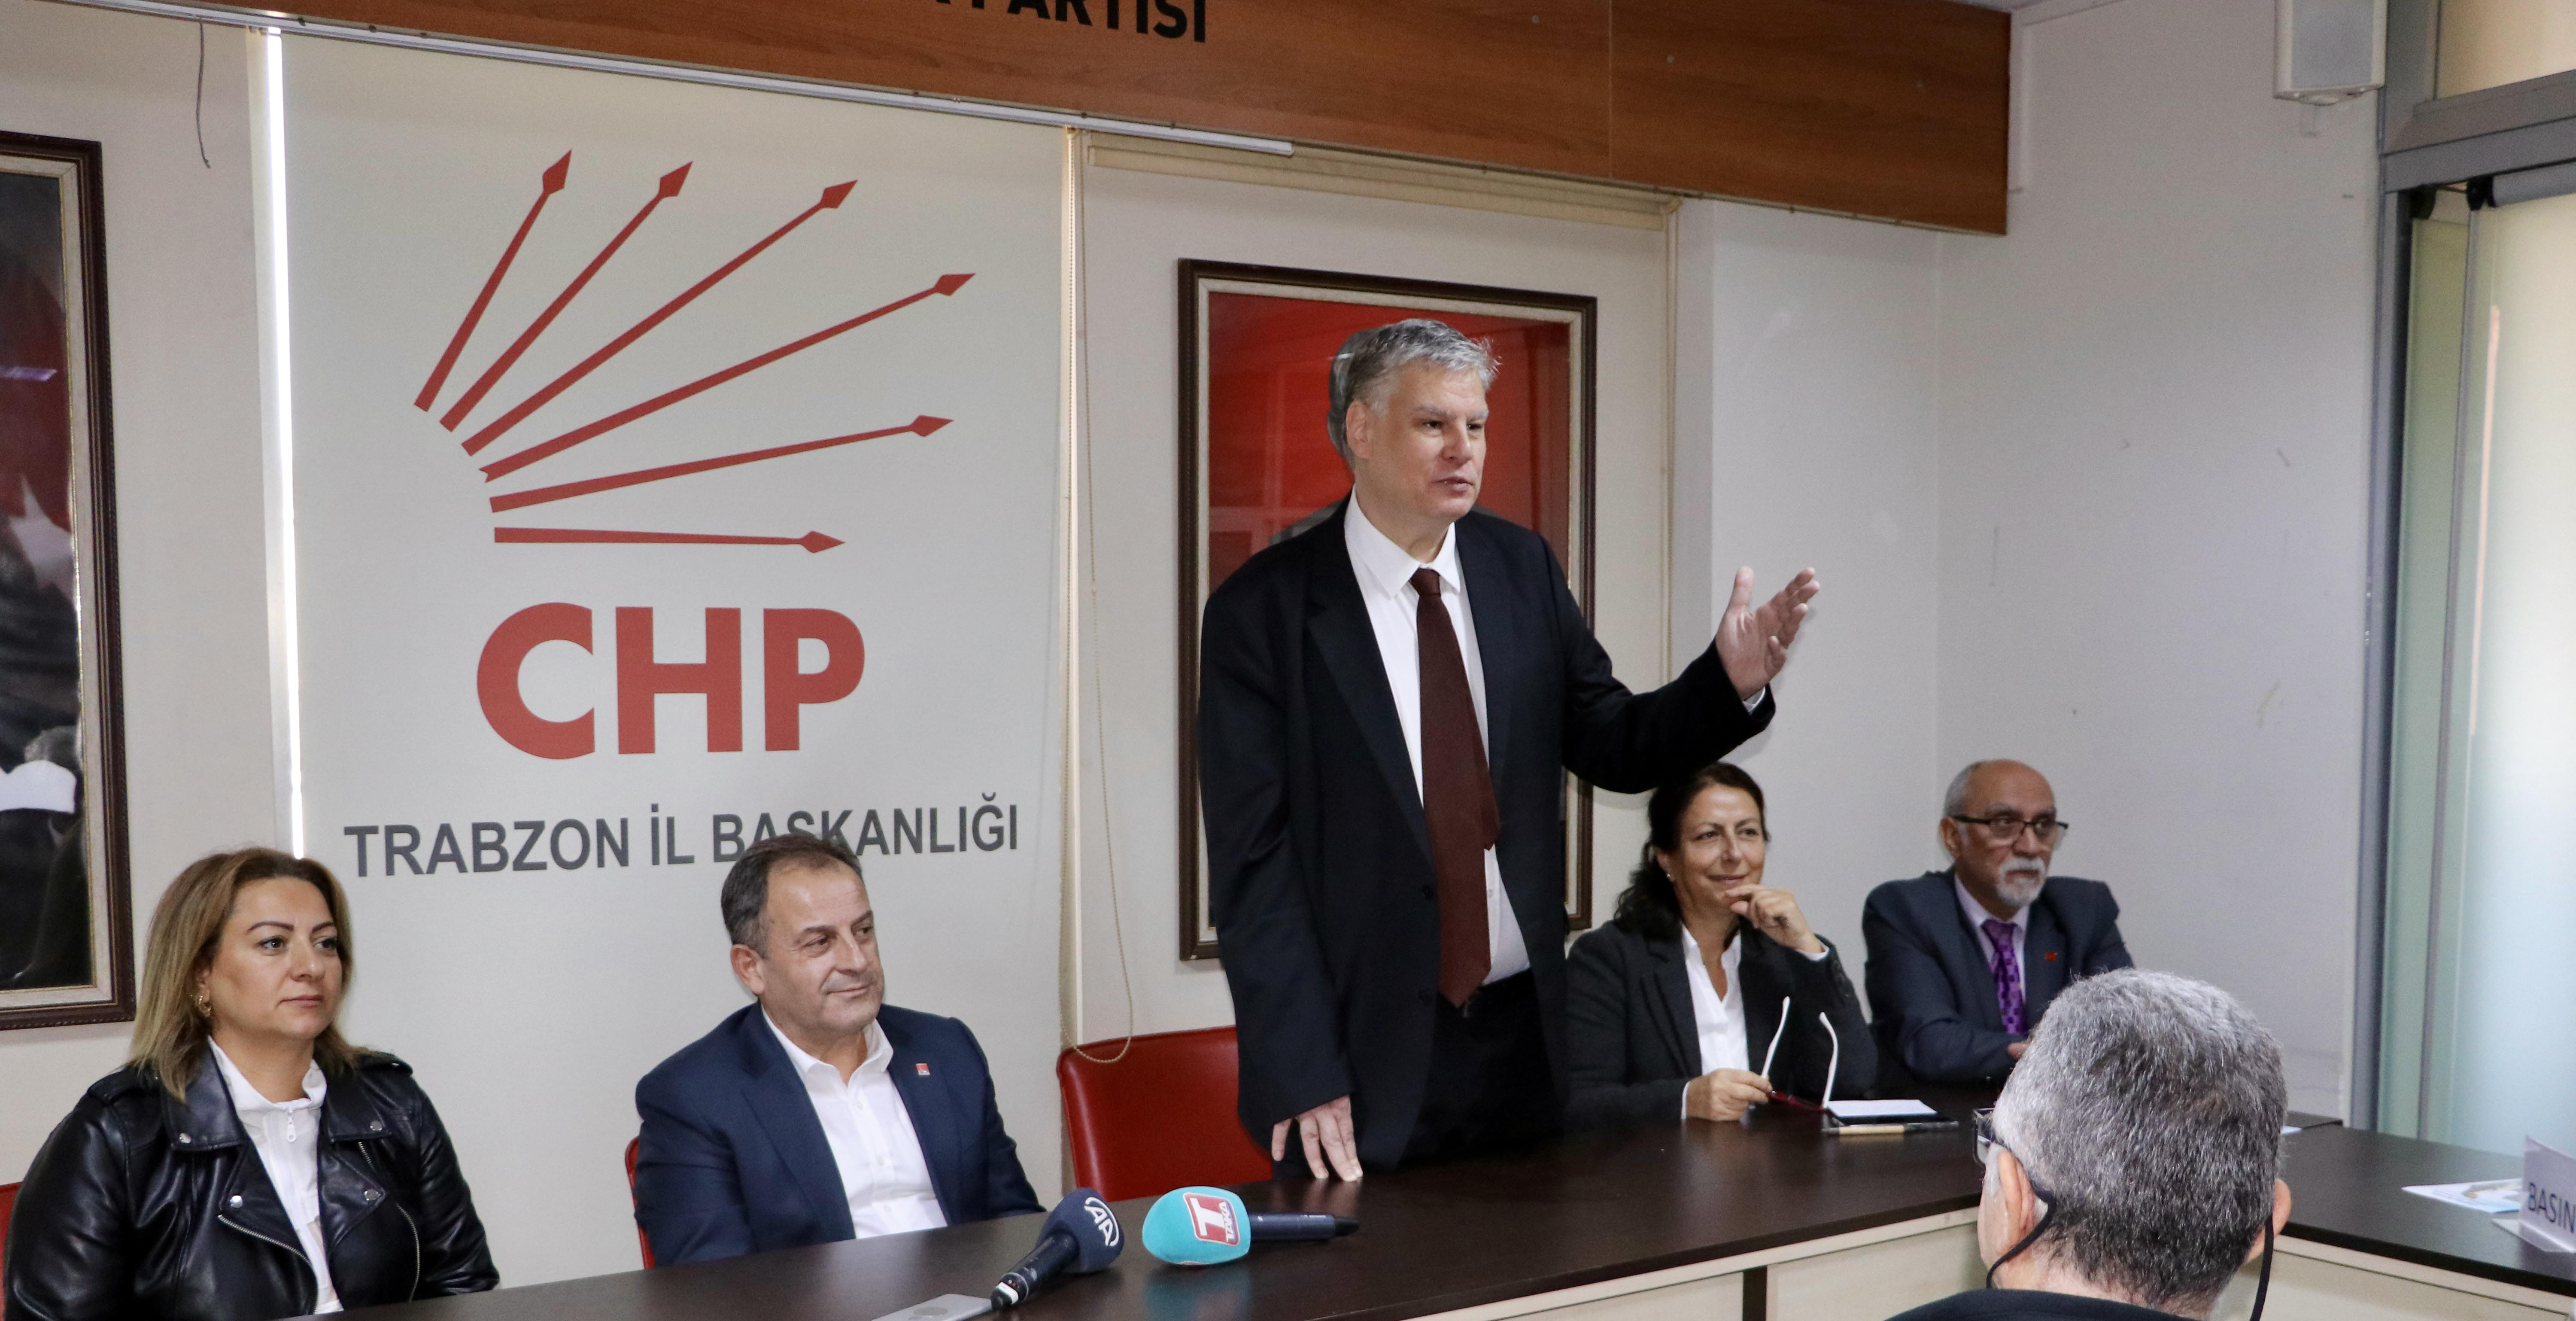 CHP genel başkanlığına adaylığını açıklayan Öymen: "İstanbul, Ankara'yı nasıl kazanacağız?"